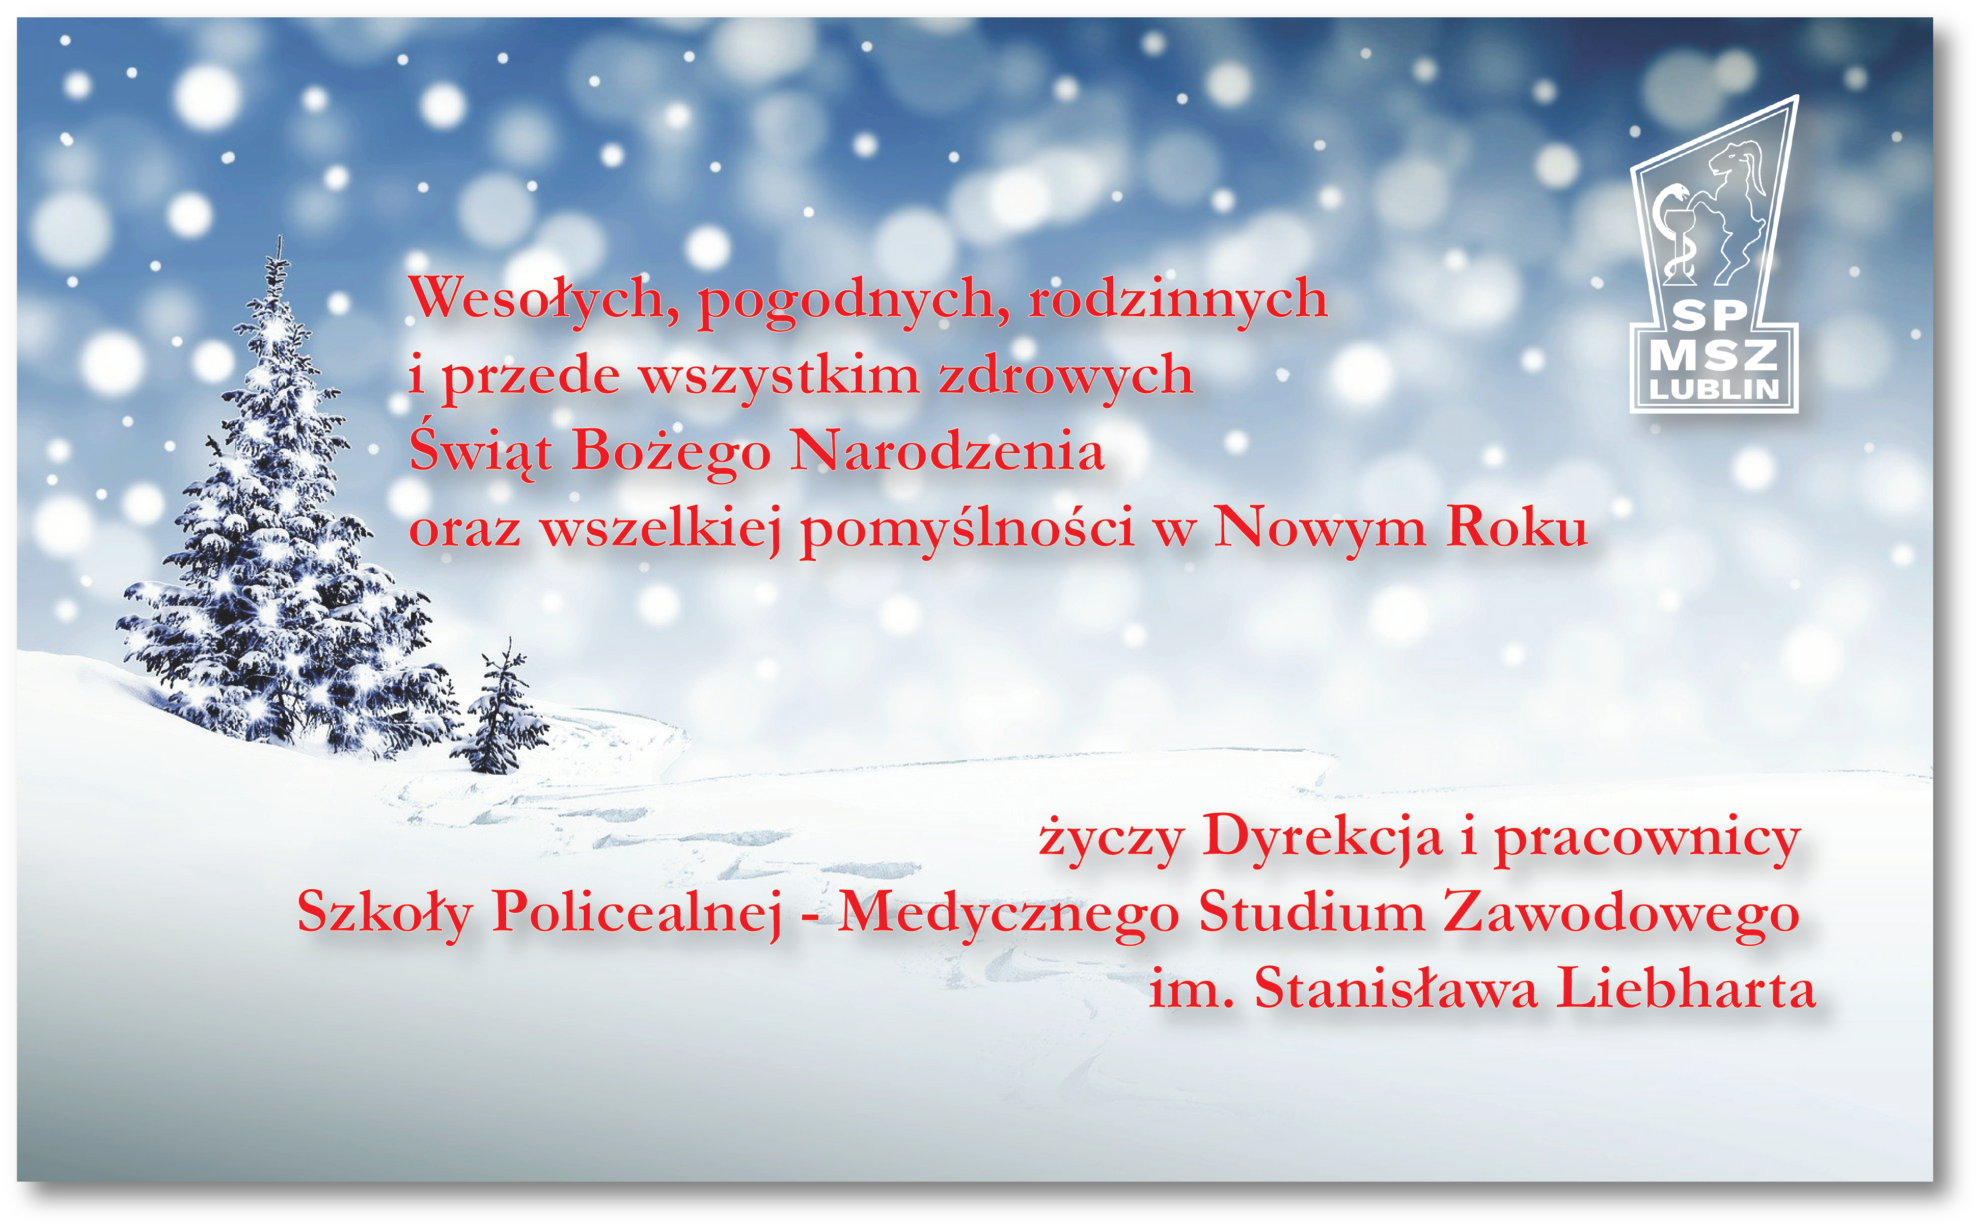 Życzenia na Boże Narodzenie i Nowy Rok, śnieg, choinka, logo studium